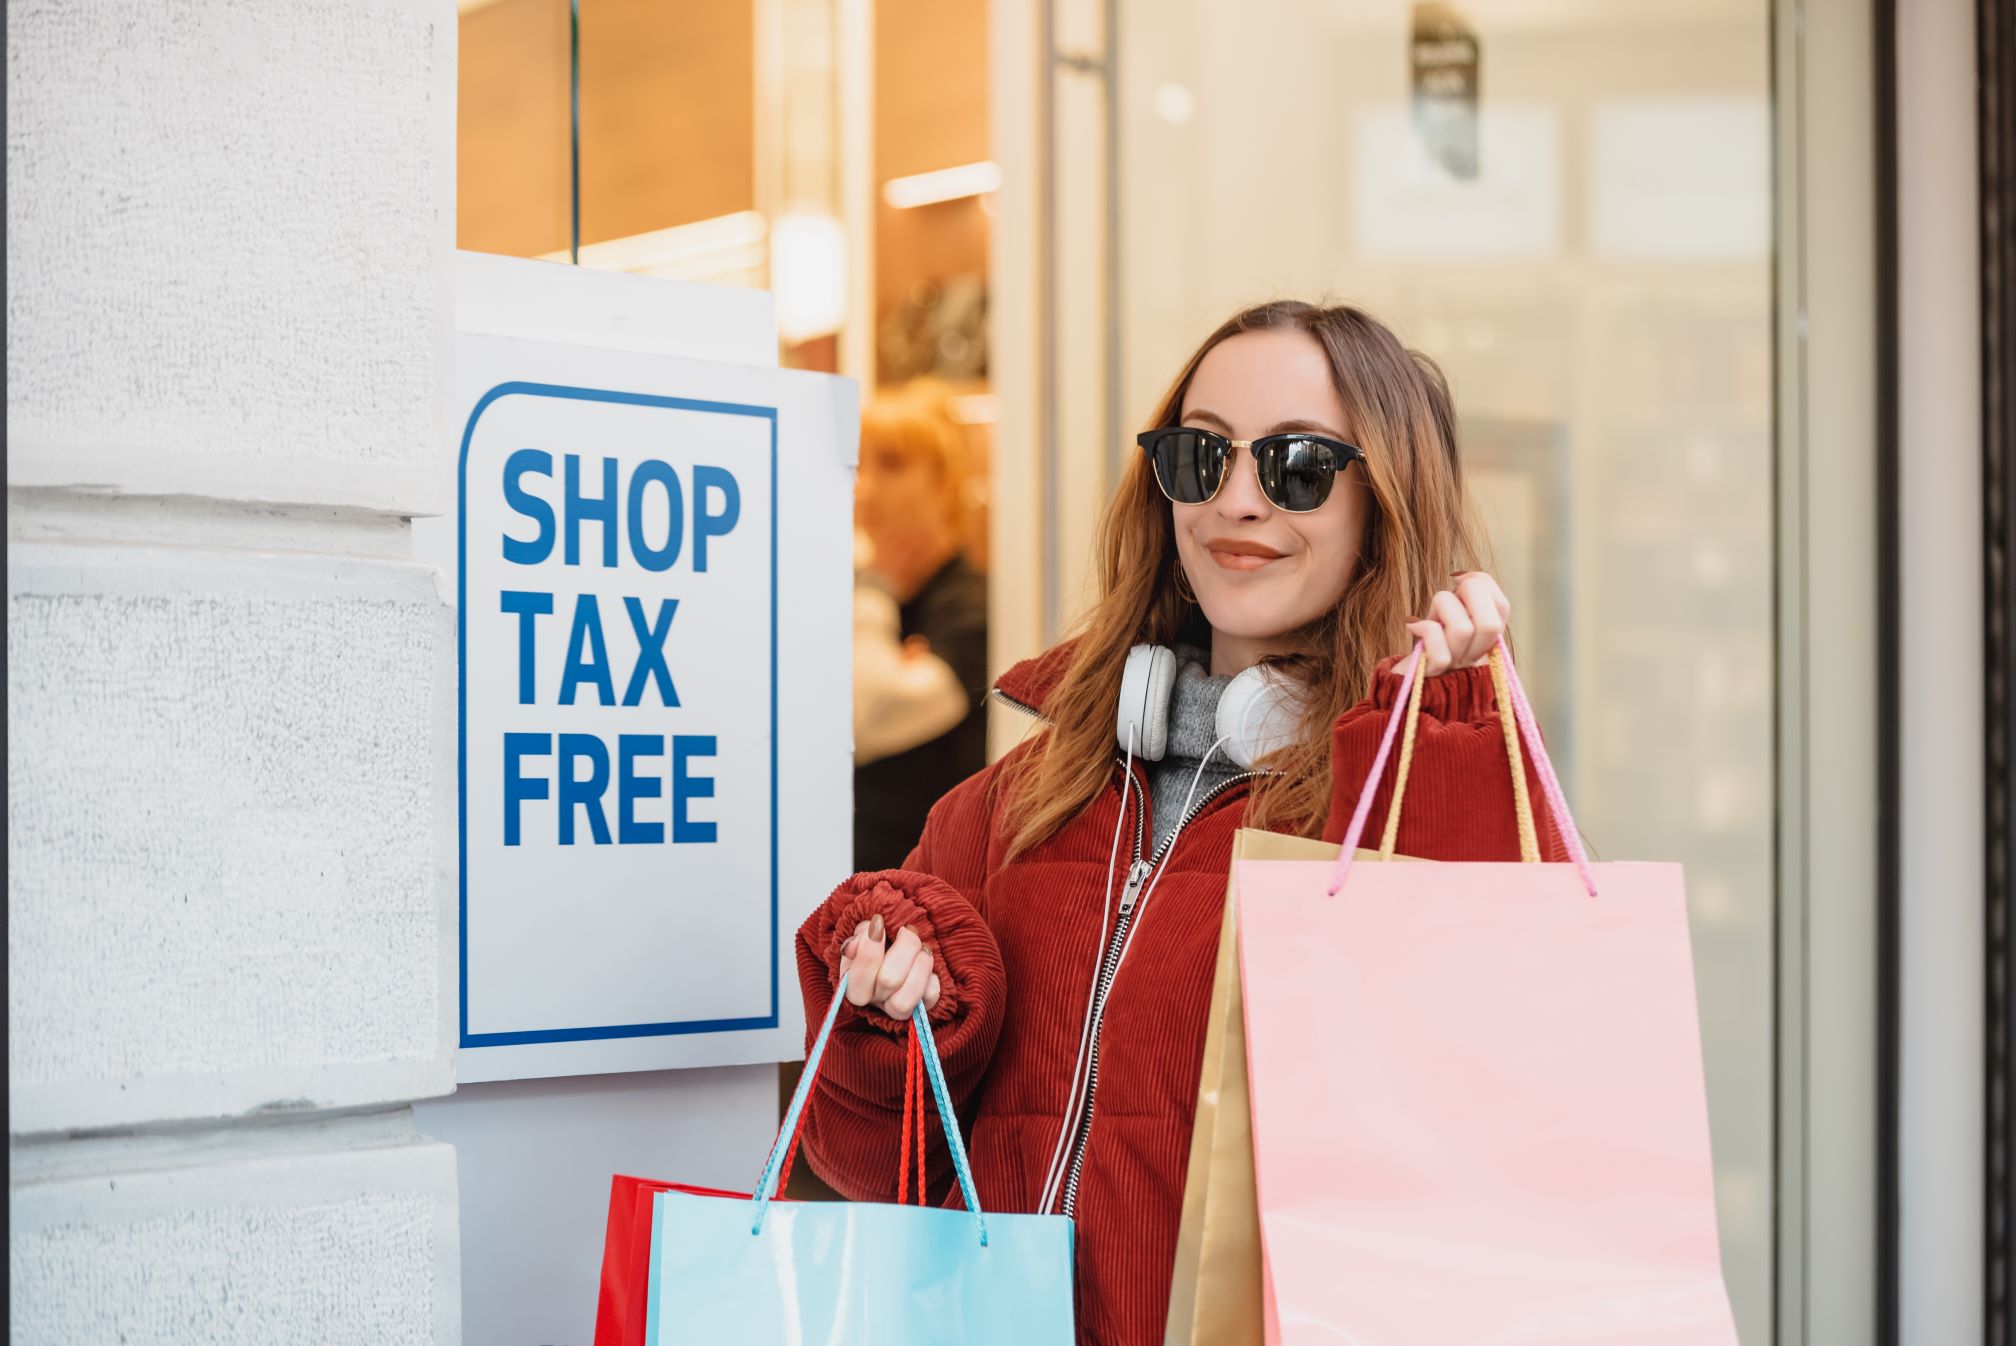 De retour dans votre pays, devez-vous payer la TVA sur les produits achetés au tax free ?